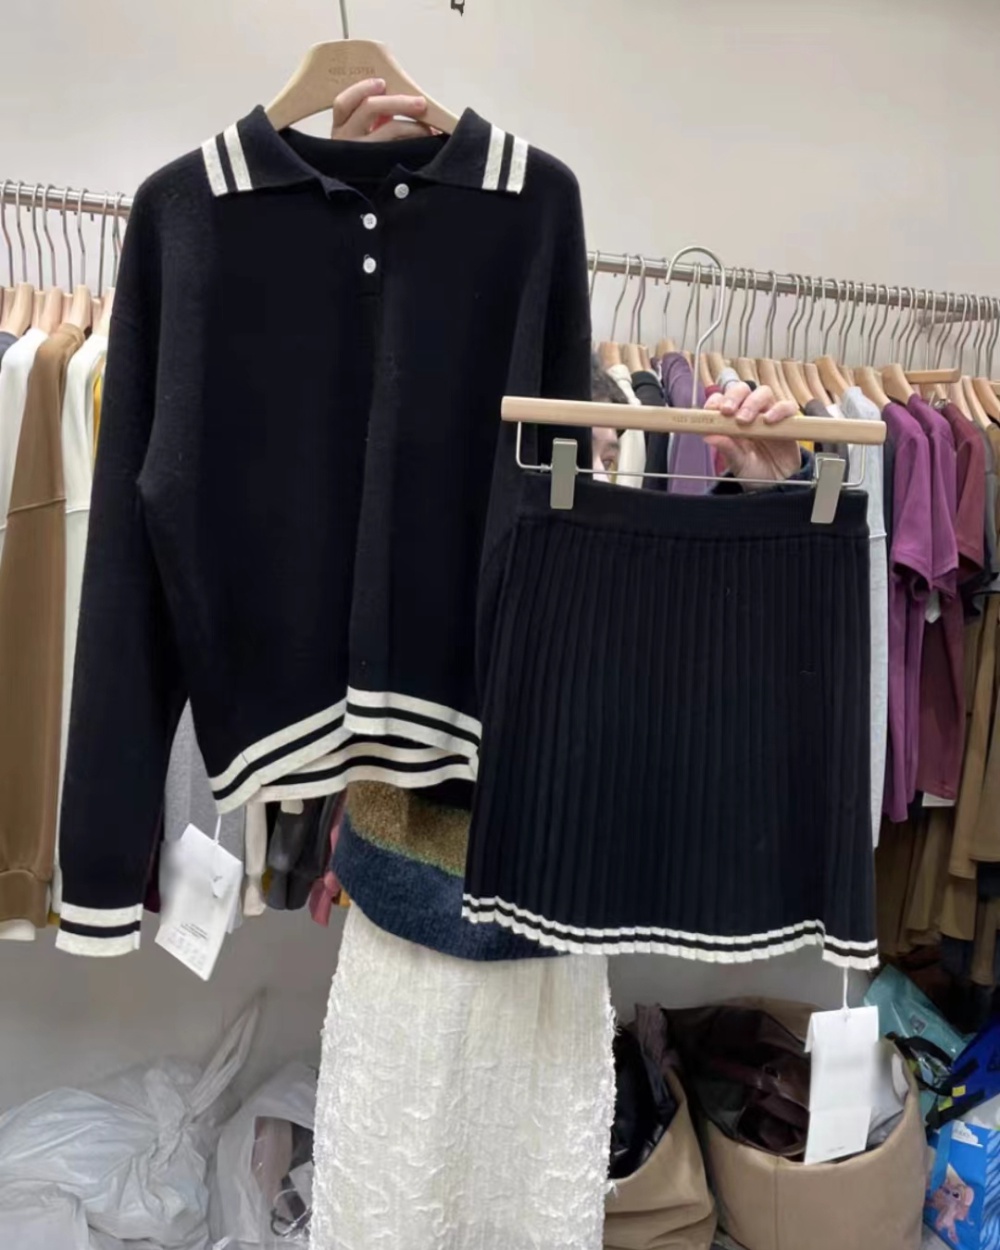 Lovely short skirt pleated sweater 2pcs set for women